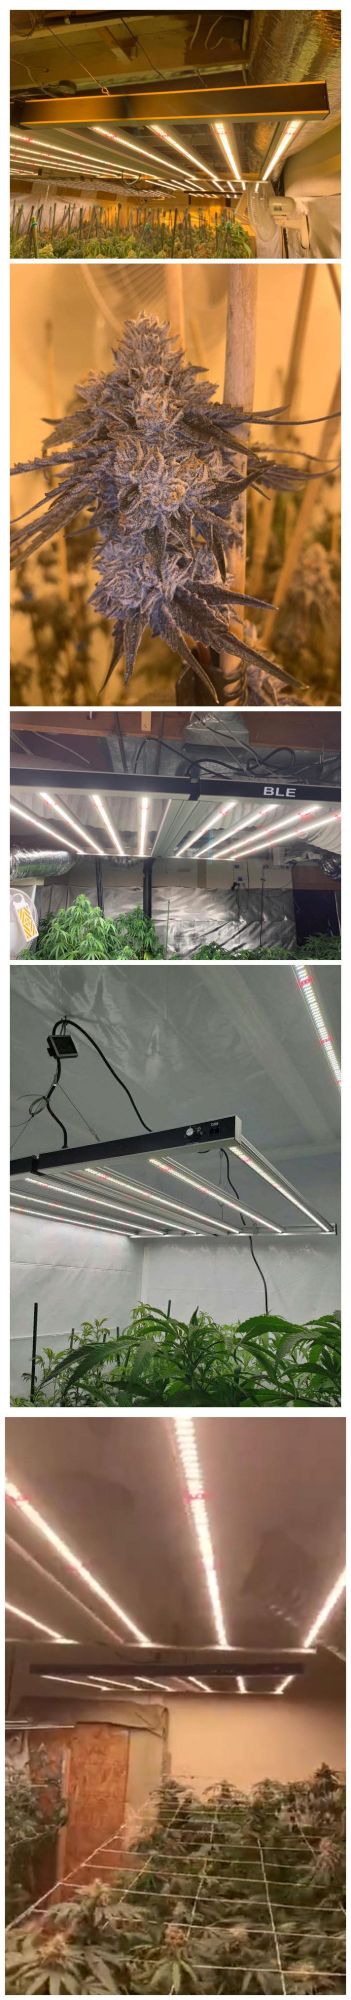 Full Spectrum 880W LED Grow Light for Vertical Farming